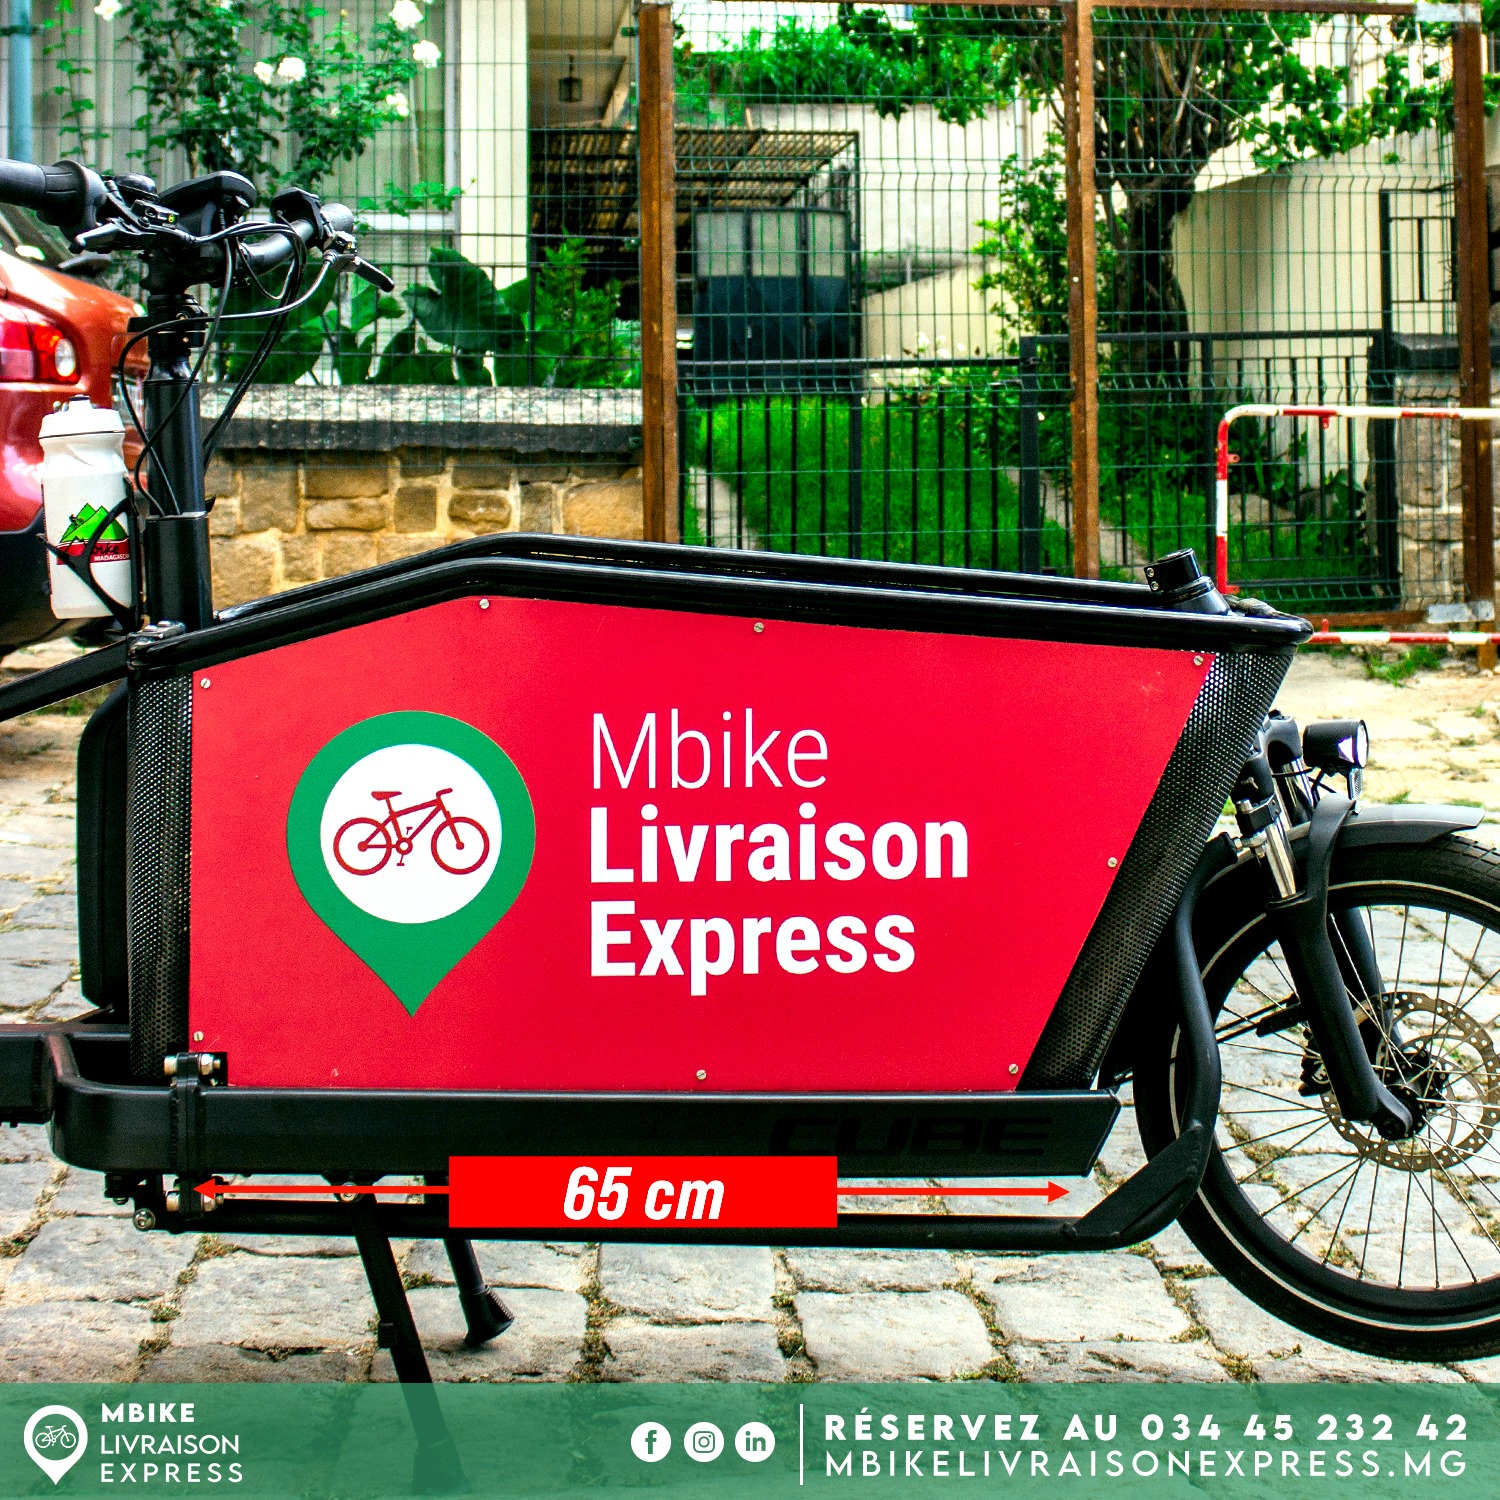 MBike Livraison Express, la livraison à domicile au service de l’écologie